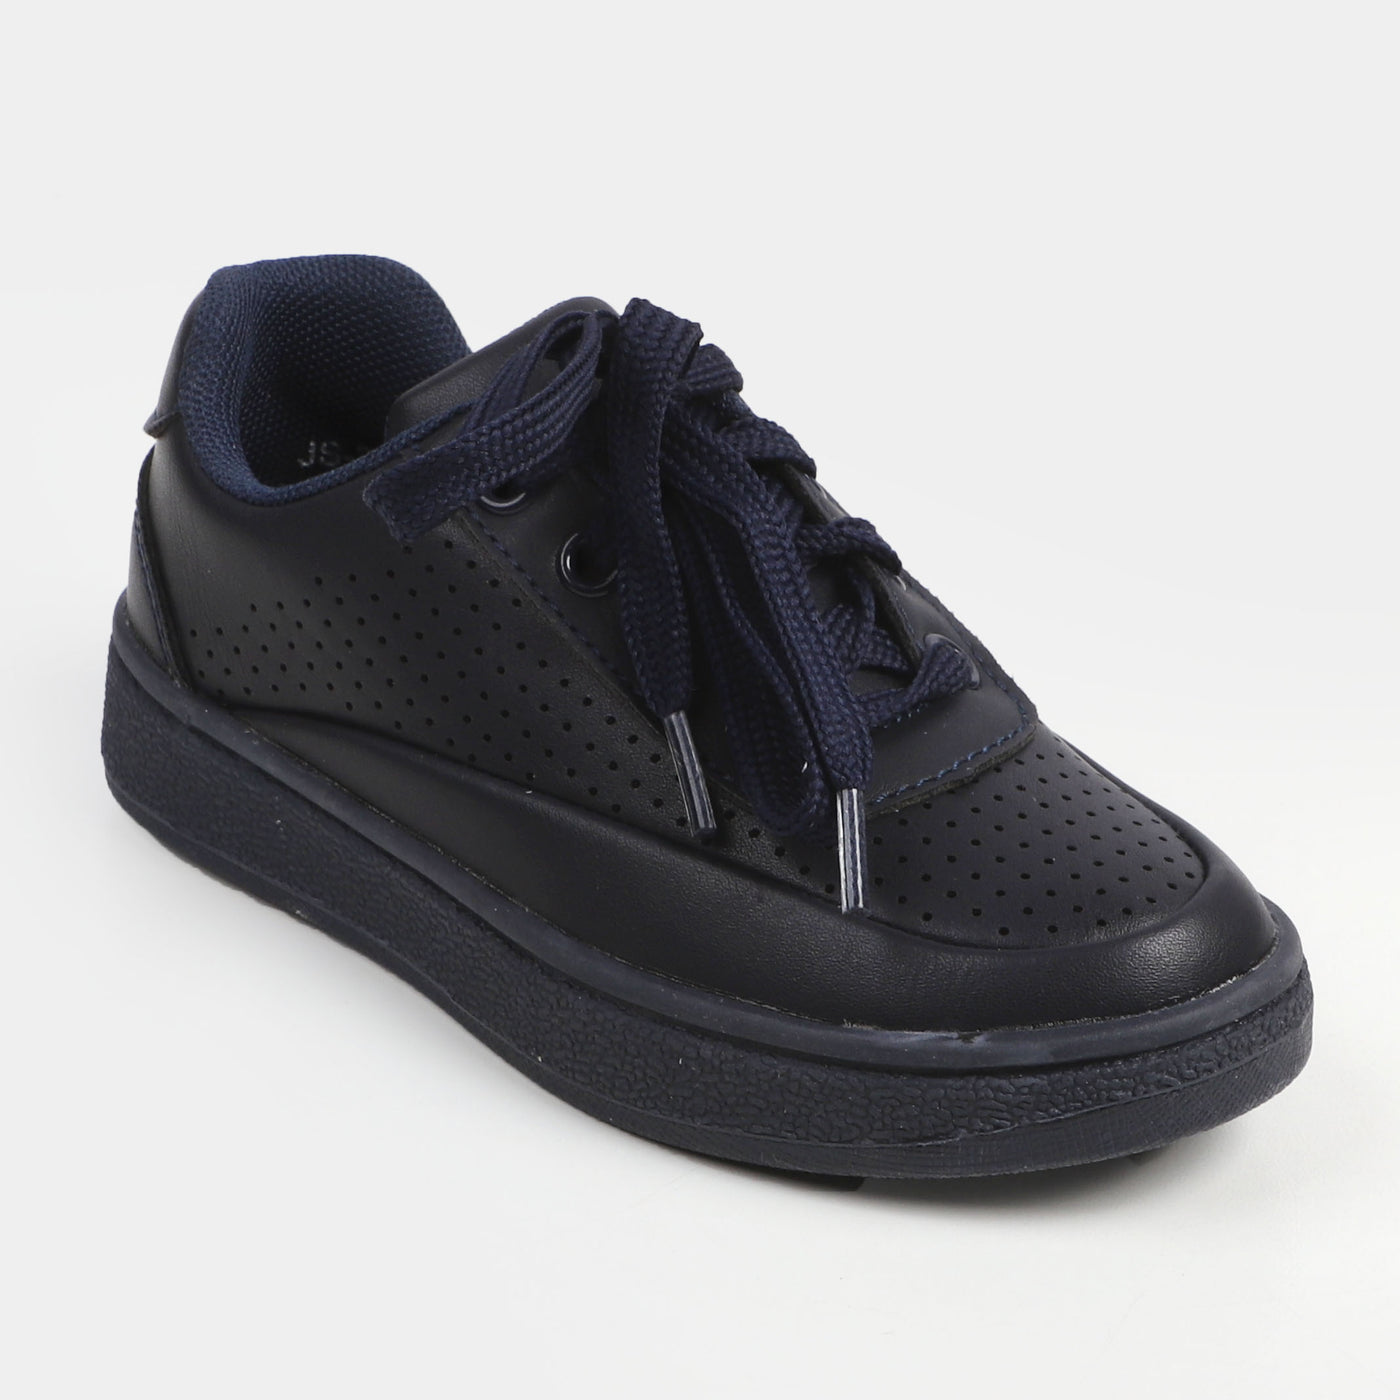 Boys Sneakers JS-22111 - Navy Blue